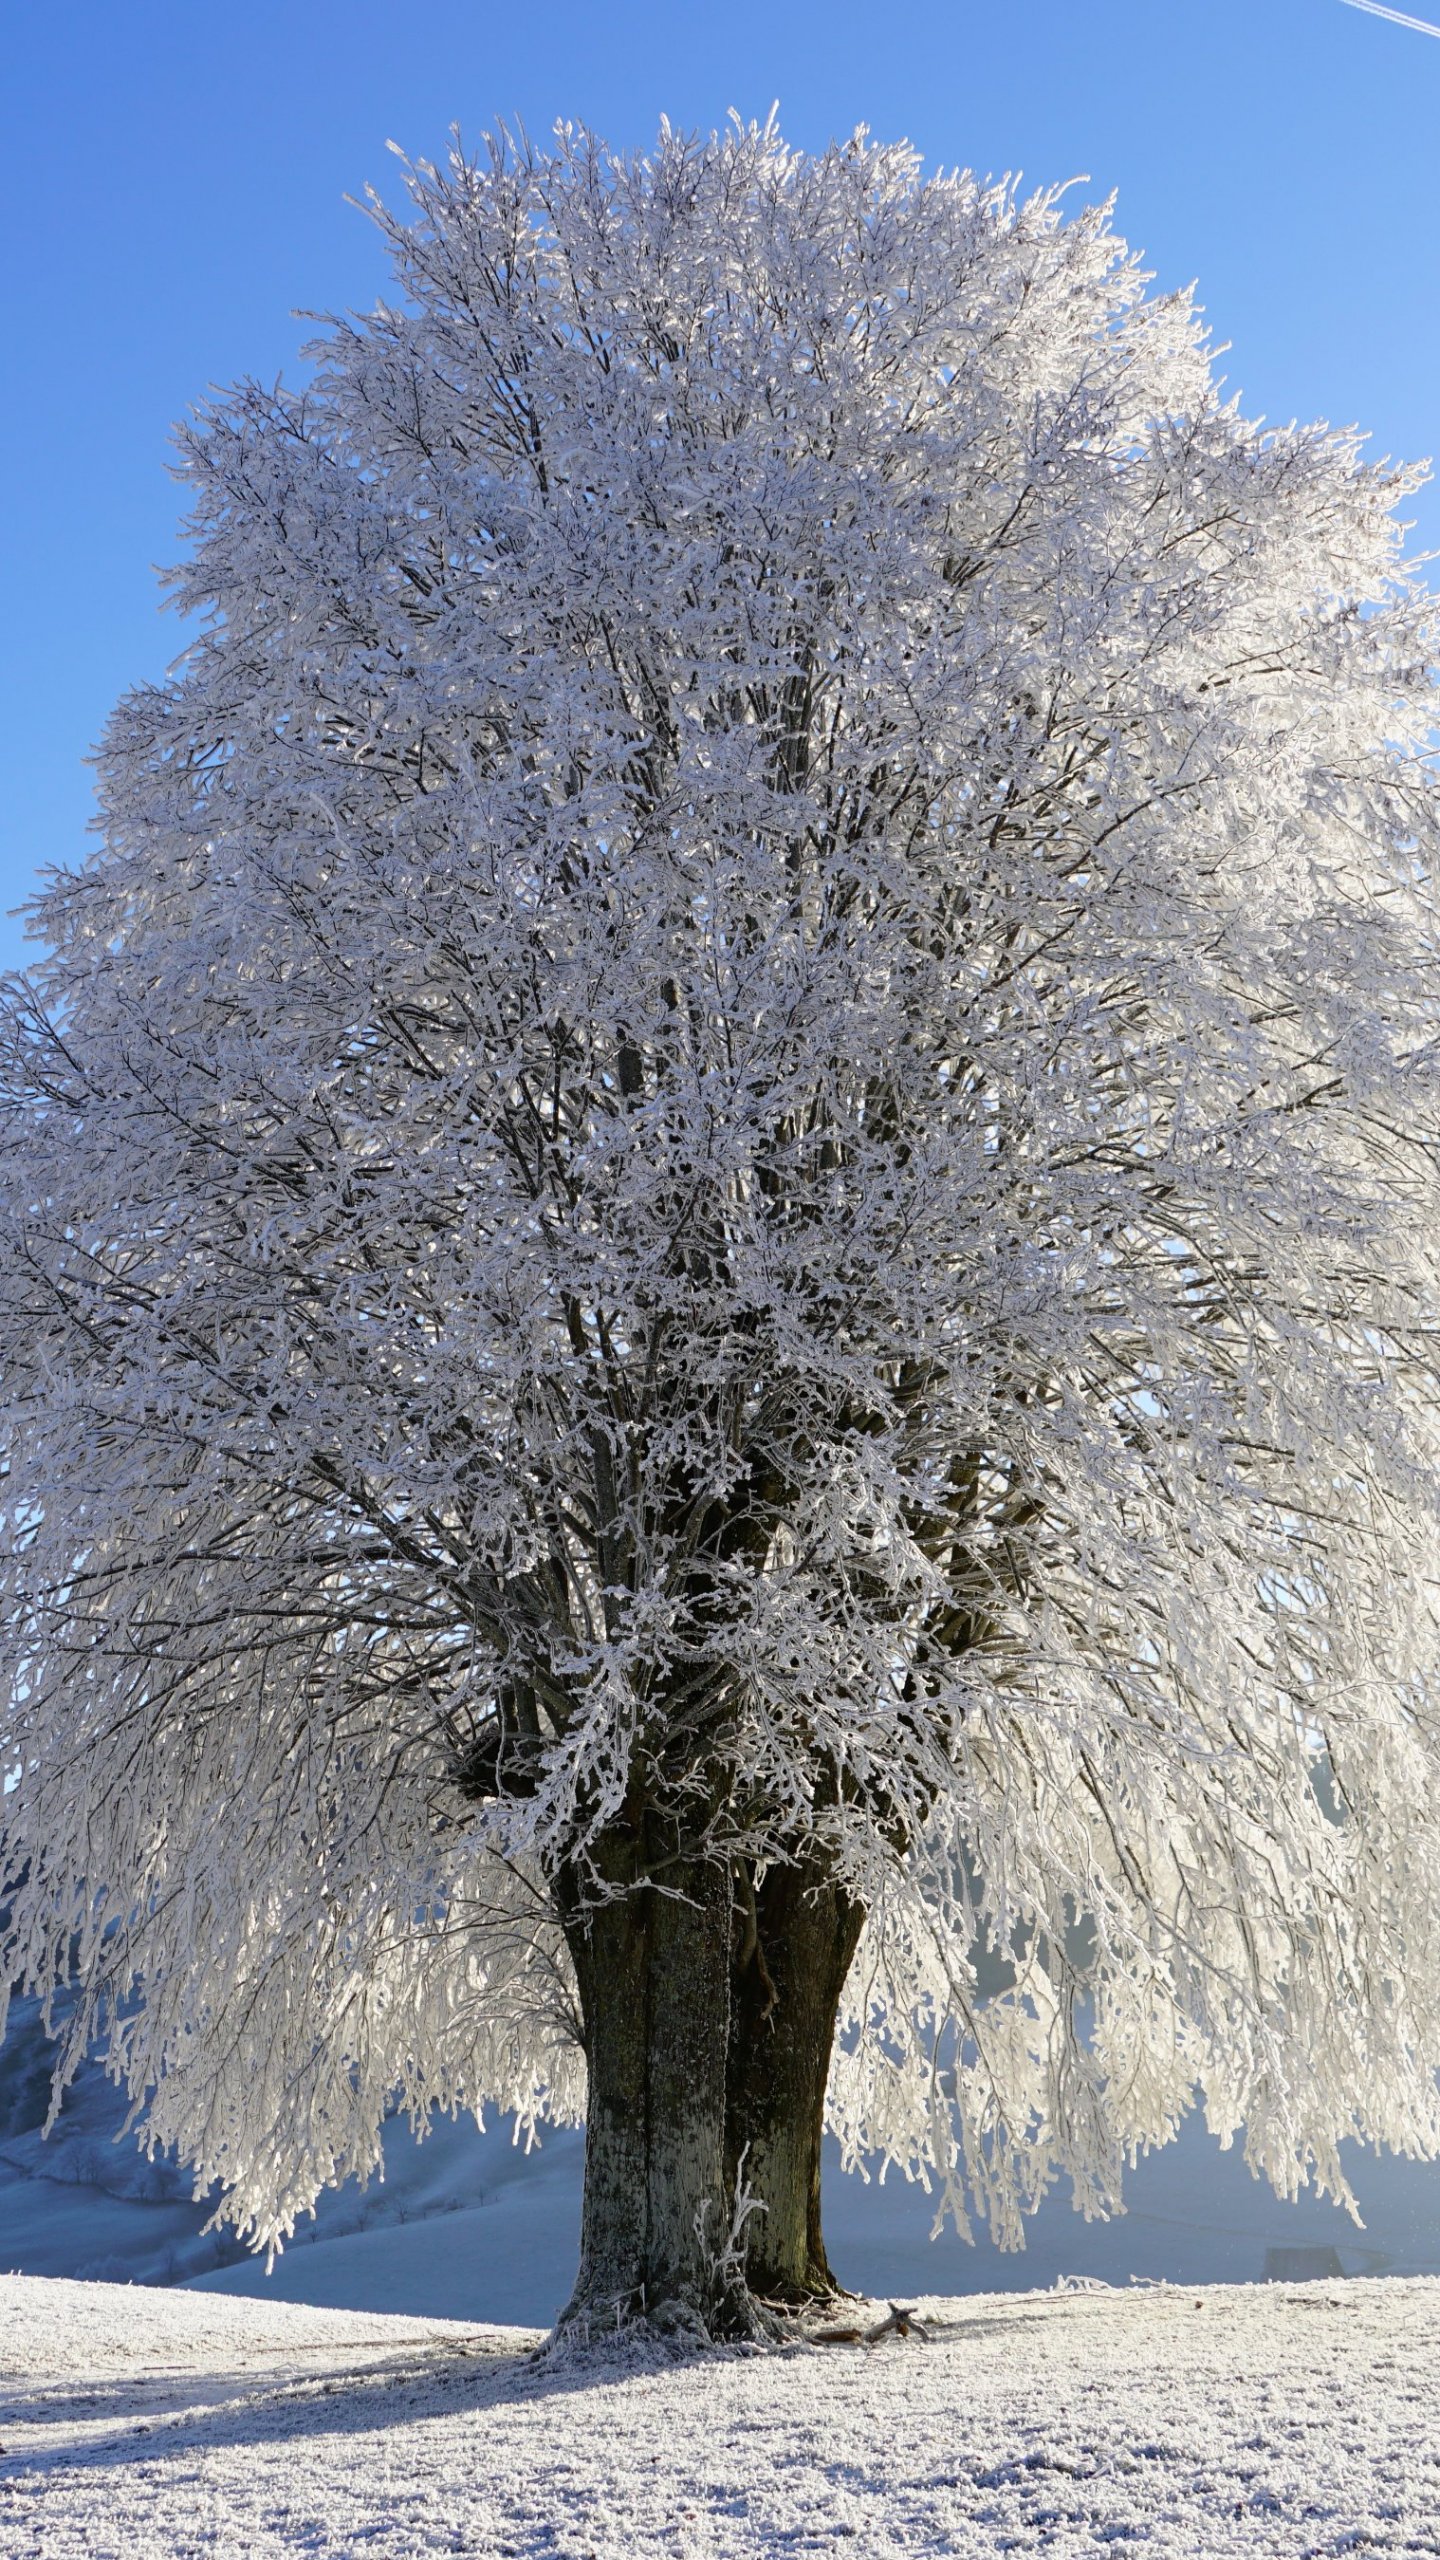 Nền cây trắng tuyết: Cảnh tượng cây trắng tuyết tràn ngập trên màn hình làm cho không gian làm việc hay chơi game của bạn trở nên uyển chuyển và tinh tế hơn. Hãy cập nhật cho mình hình ảnh nền đẹp mắt này và tận hưởng những giờ phút tuyệt vời.